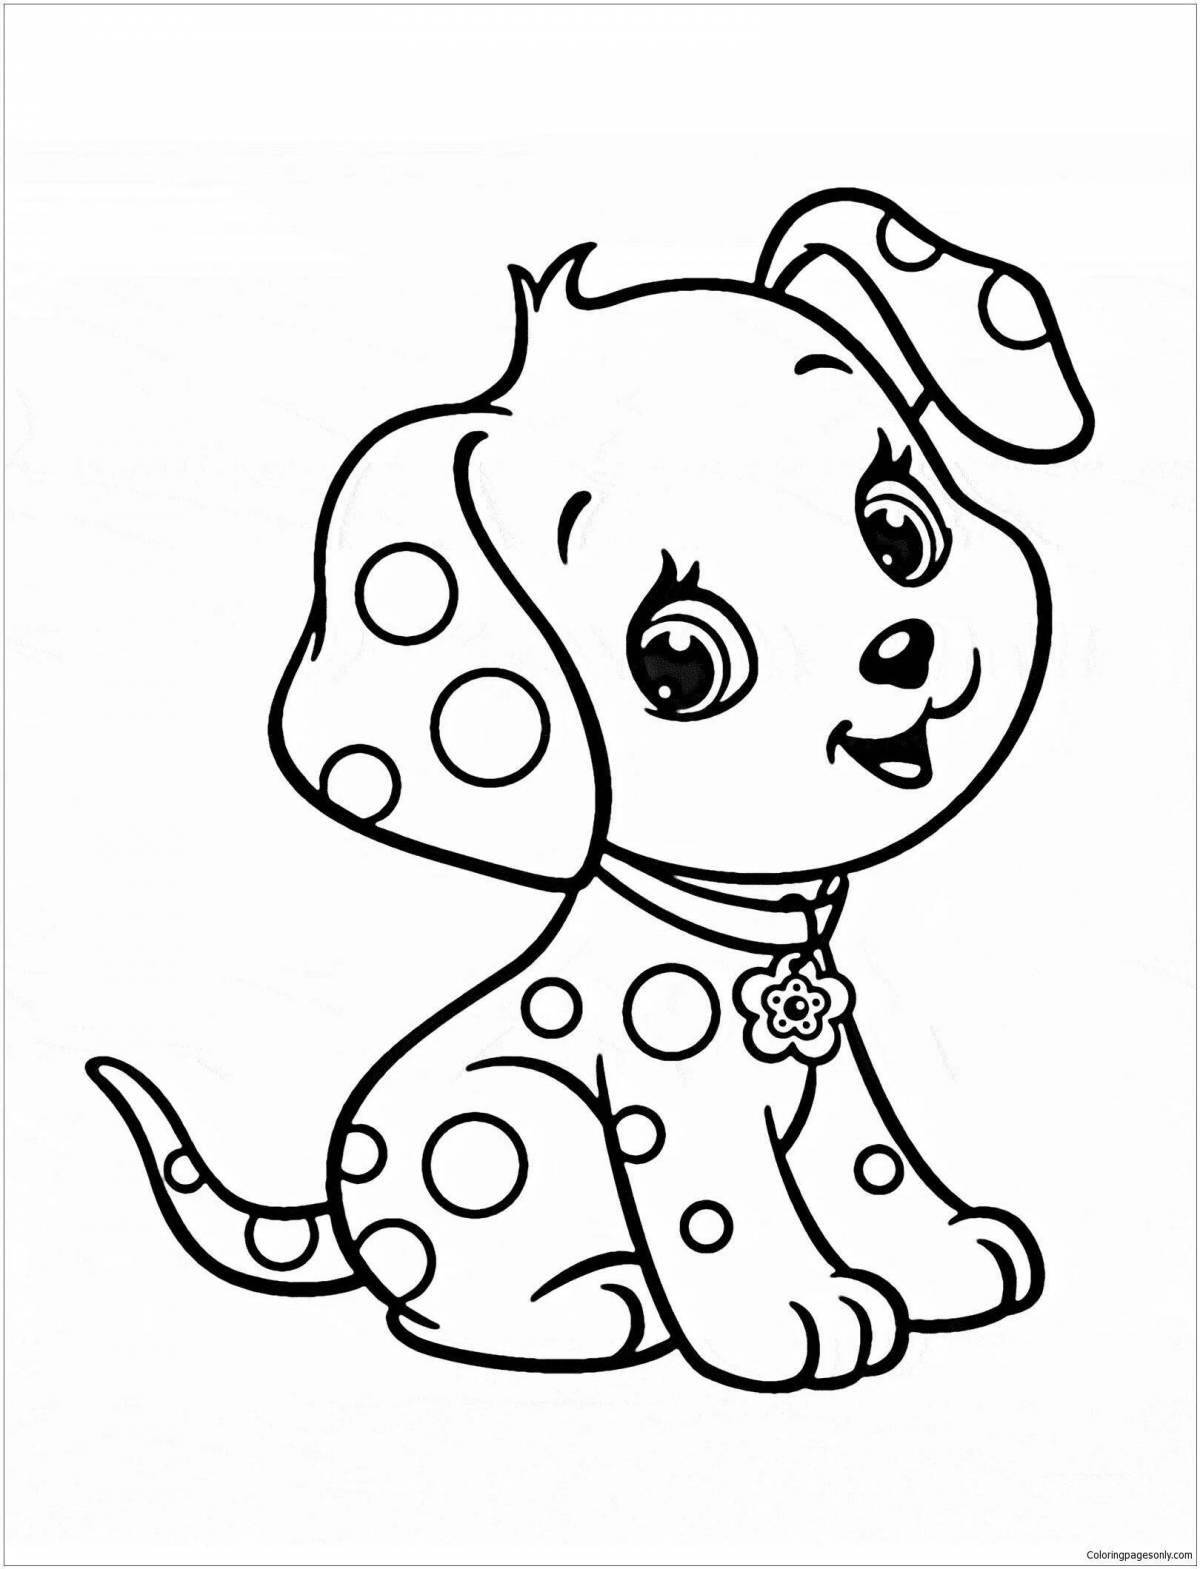 Joyful little dog coloring book